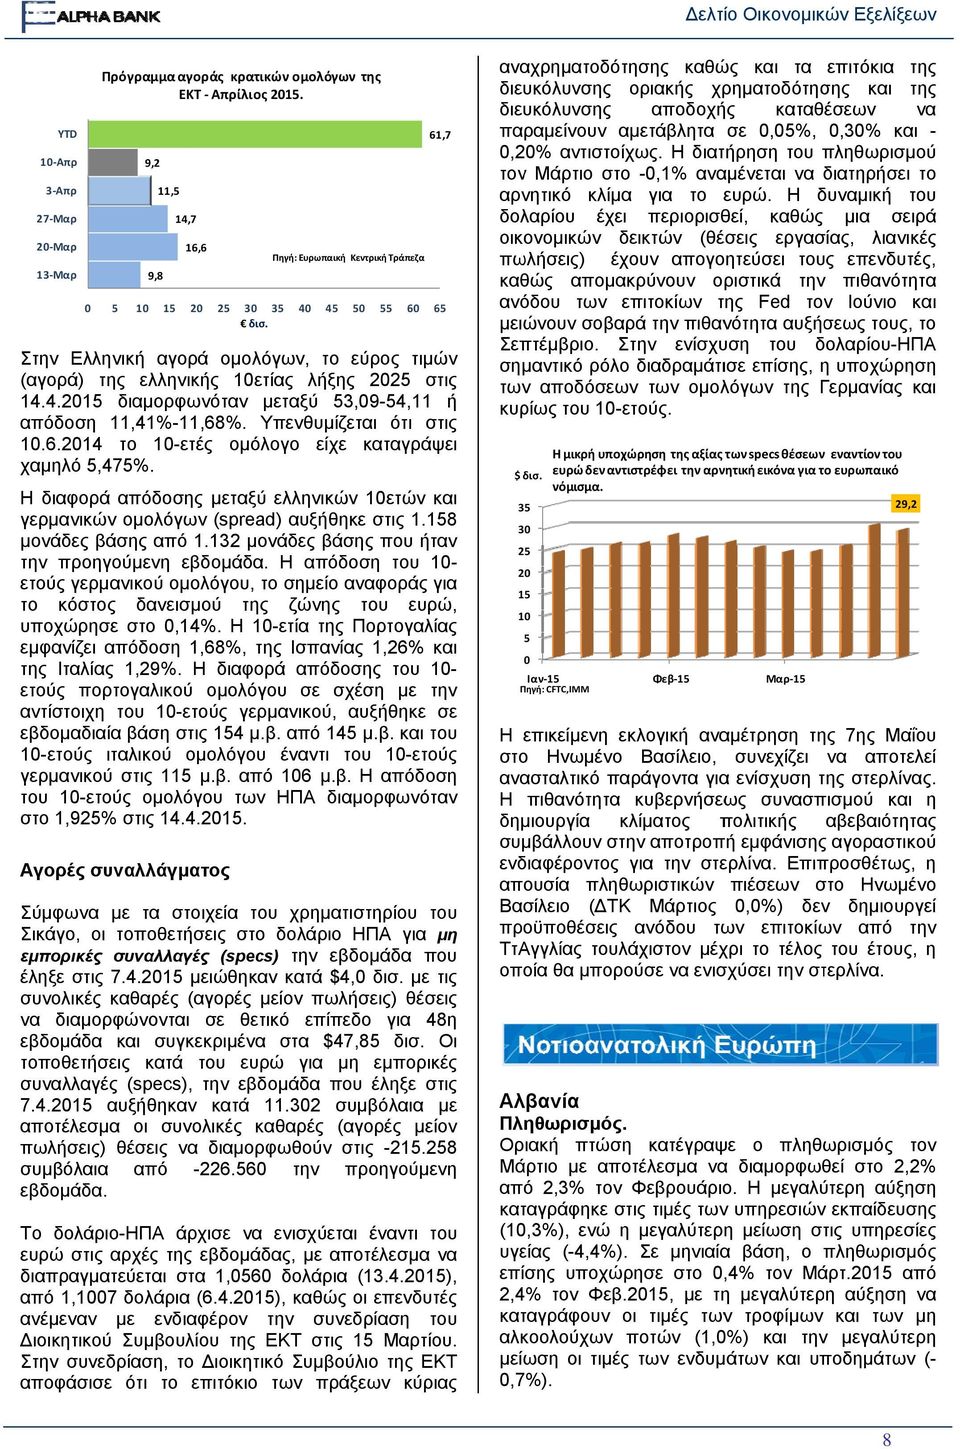 %. Υπενθυμίζεται ότι στις 10.6.2014 το 10-ετές ομόλογο είχε καταγράψει χαμηλό 5,475%. Η διαφορά απόδοσης μεταξύ ελληνικών 10ετώνν και γερμανικών ομολόγων (spread) αυξήθηκε στις 1.